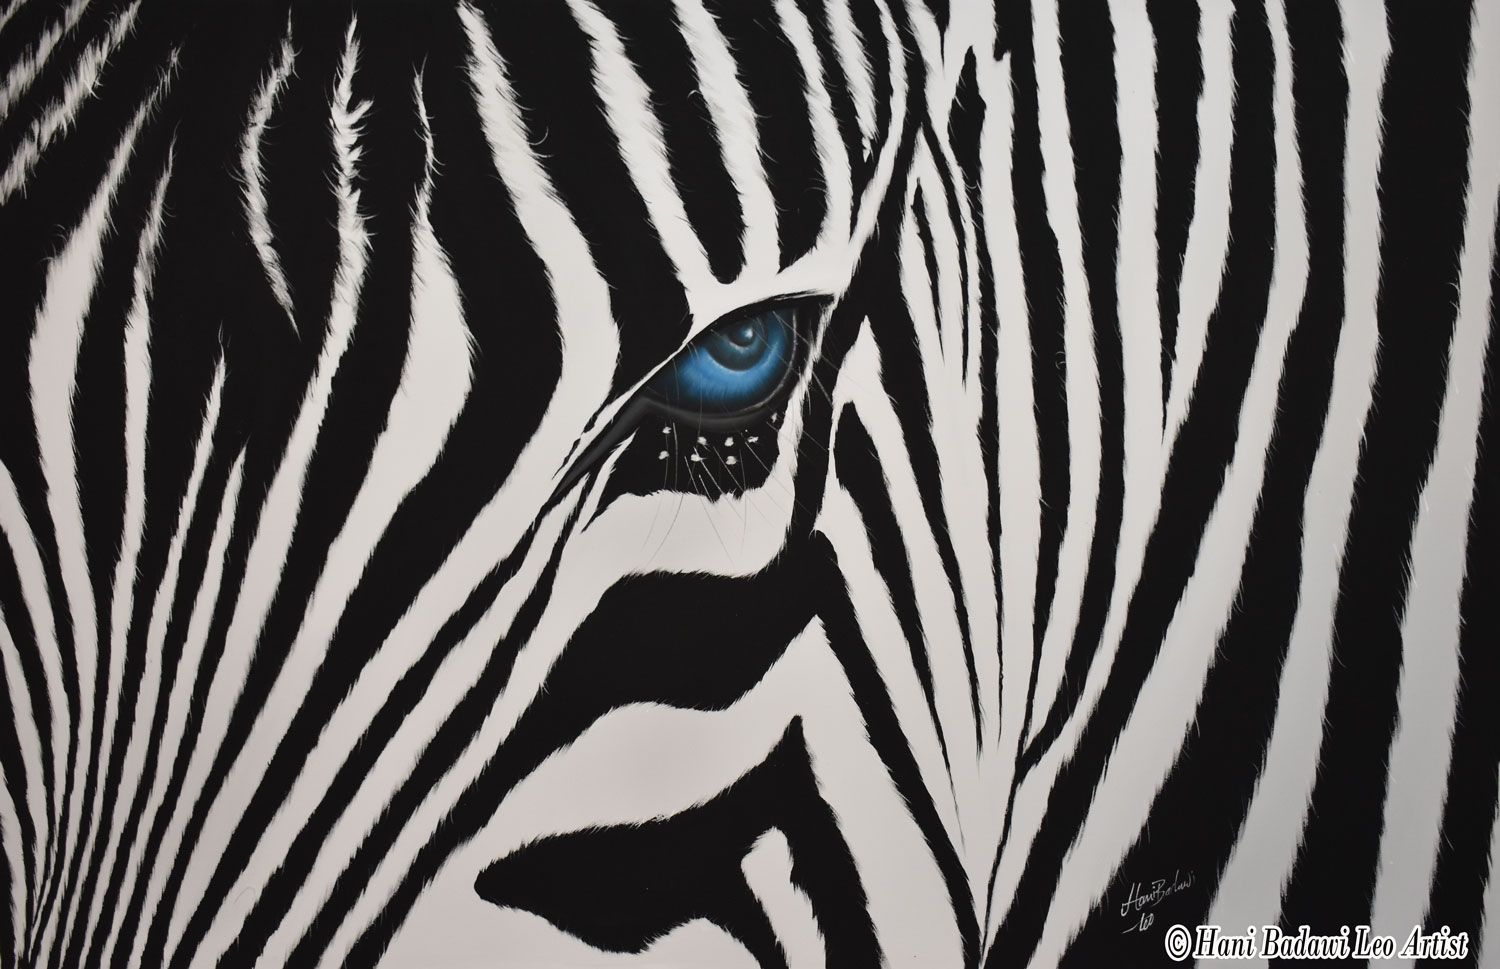 The look of zebra